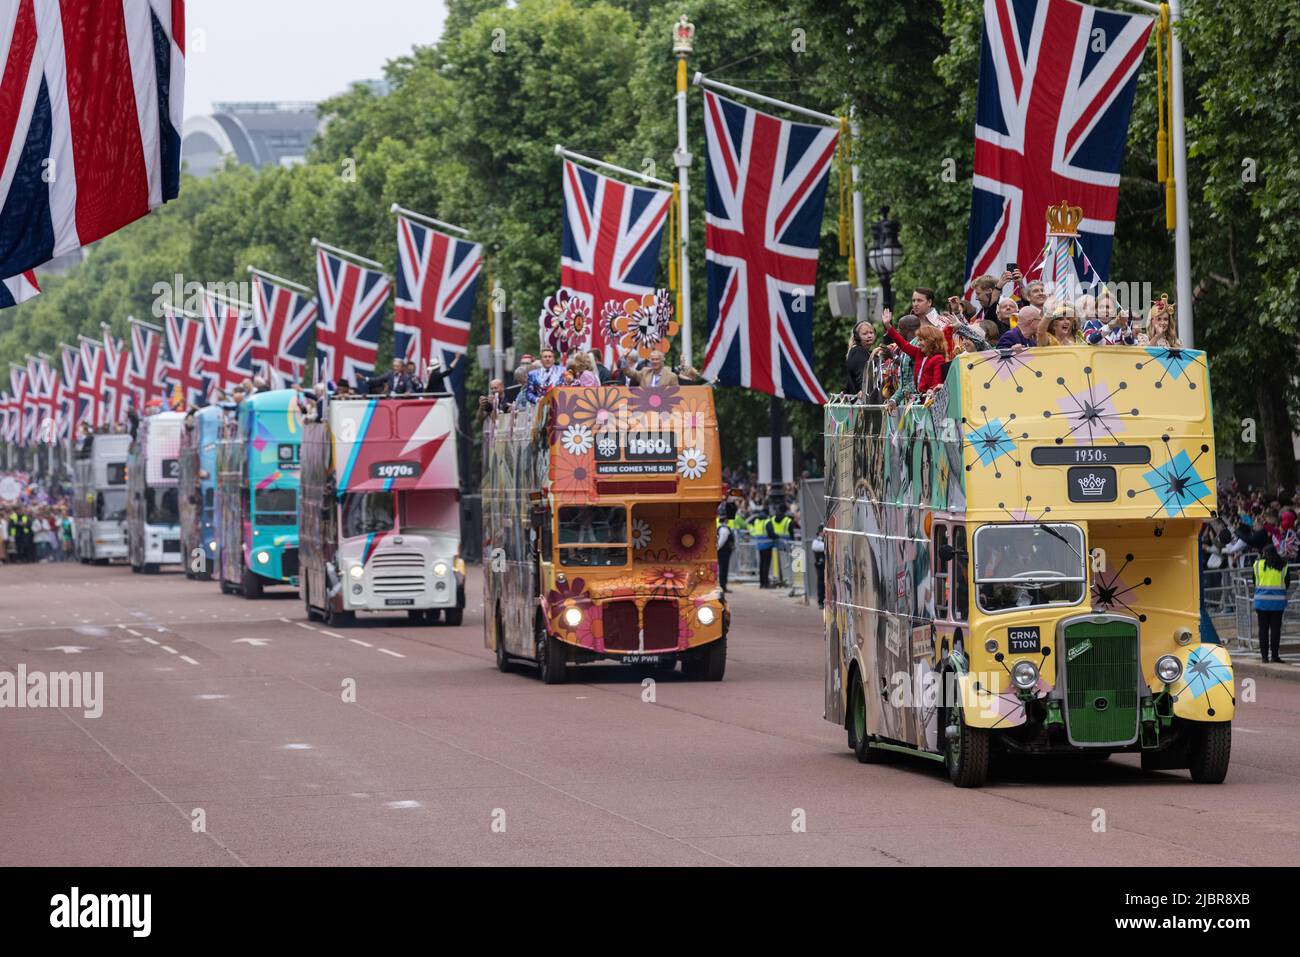 Der Platinum Jubilee Pageant fand am Sonntag, den 5. Juni 2022, in der Nähe des Buckingham Palace statt, als Teil der Platinum Jubilee-Feiern von Königin Elizabeth II. Stockfoto